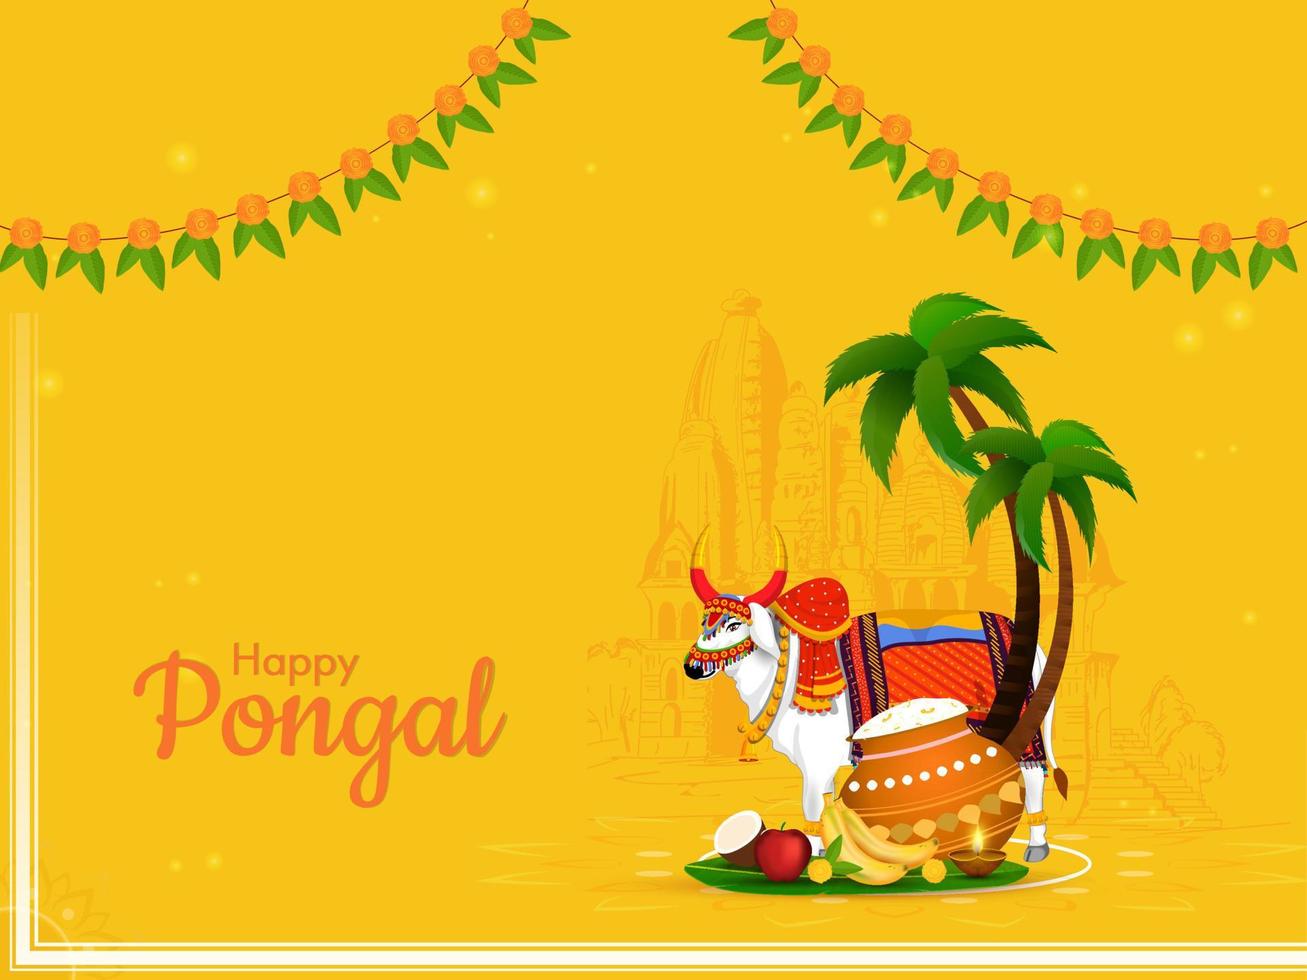 gelukkig pongal viering concept met os karakter, rijst- modder pot, fruit, palm of kokosnoot bomen, Toran Aan geel tempel achtergrond. vector